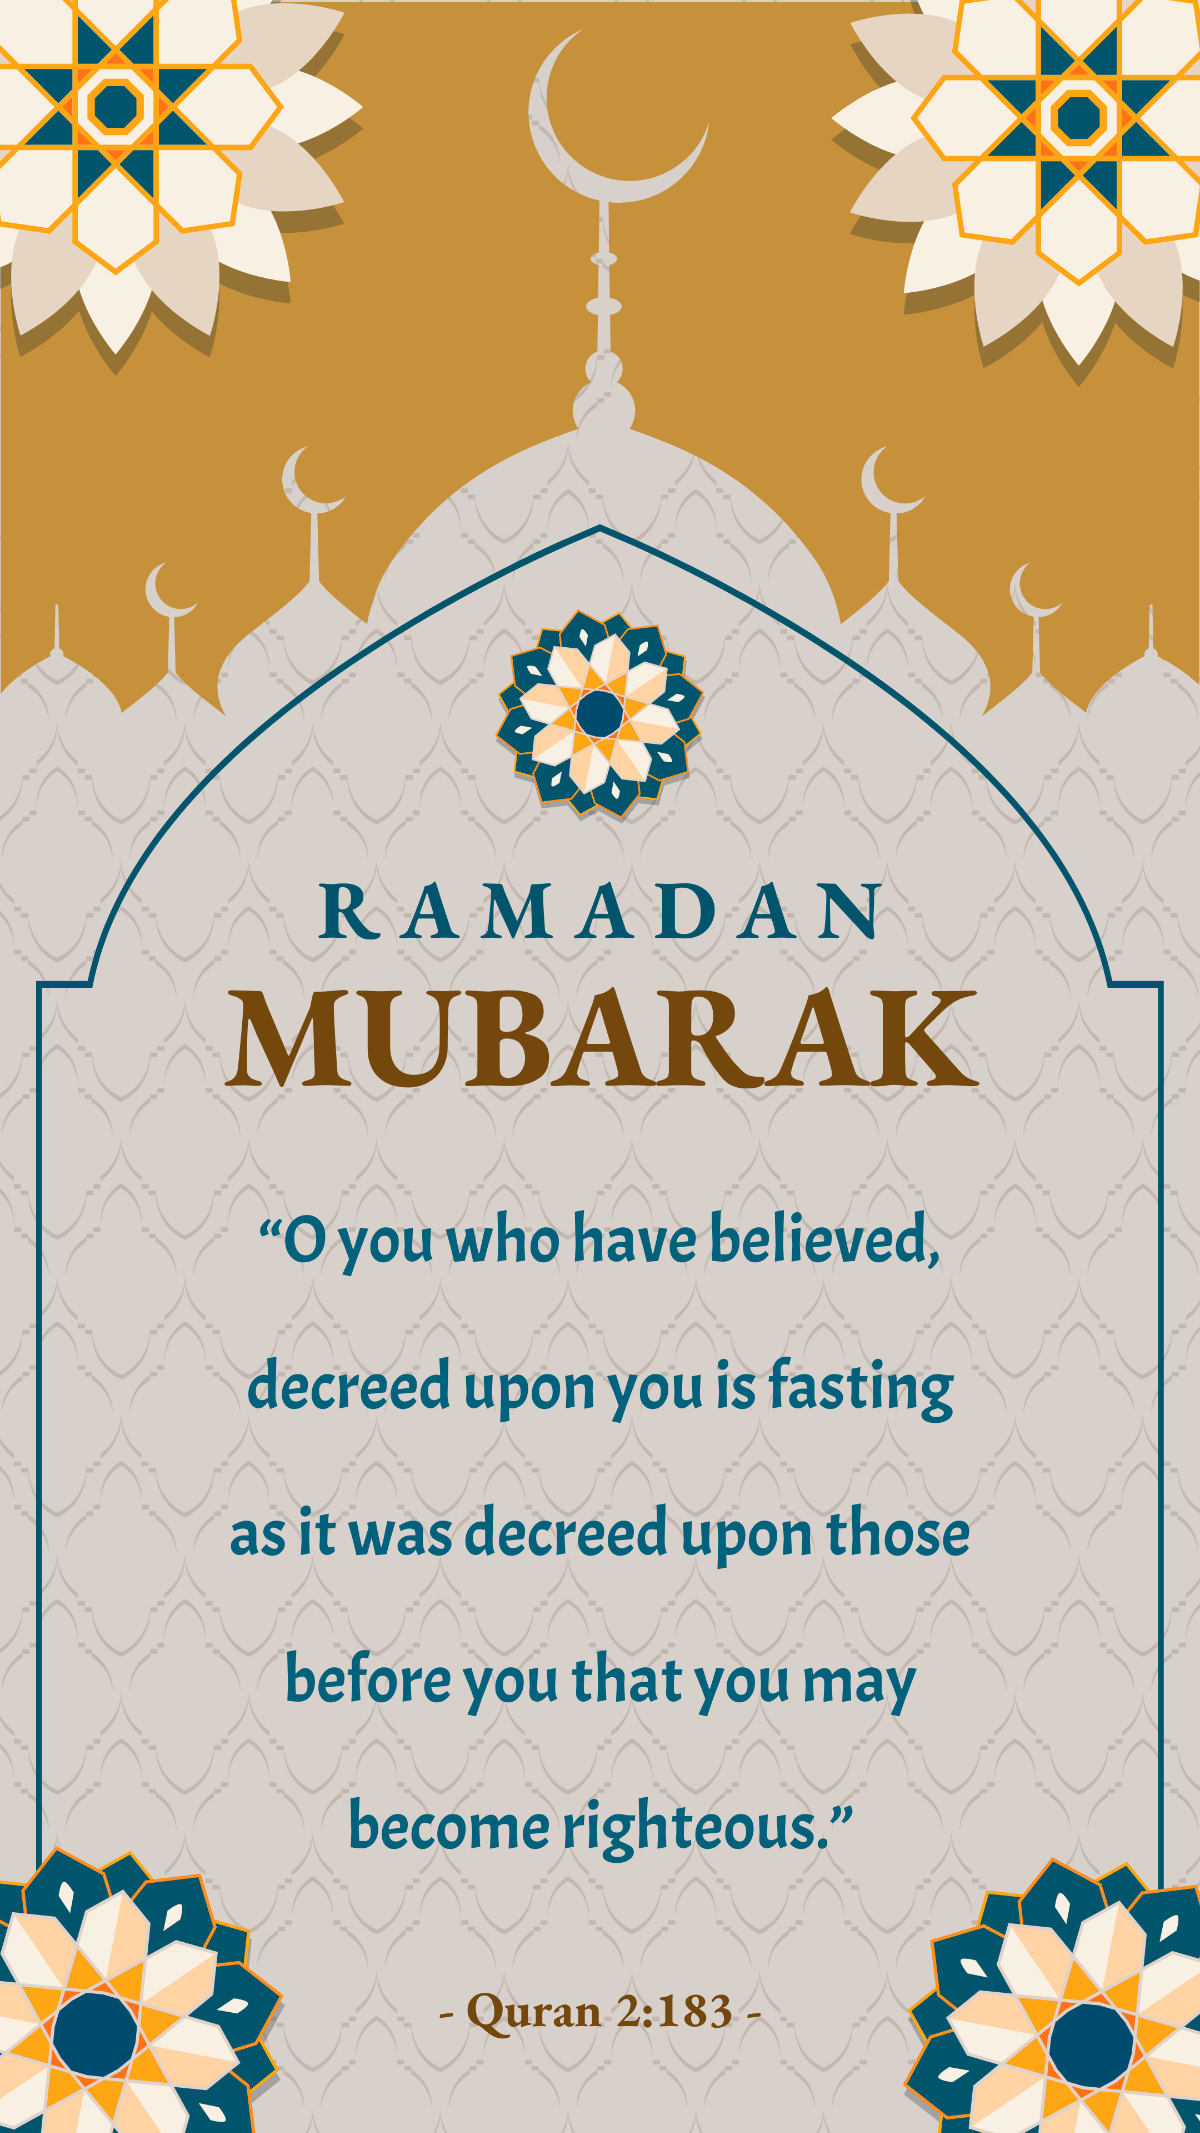 Ramadan Mubarak Video Template